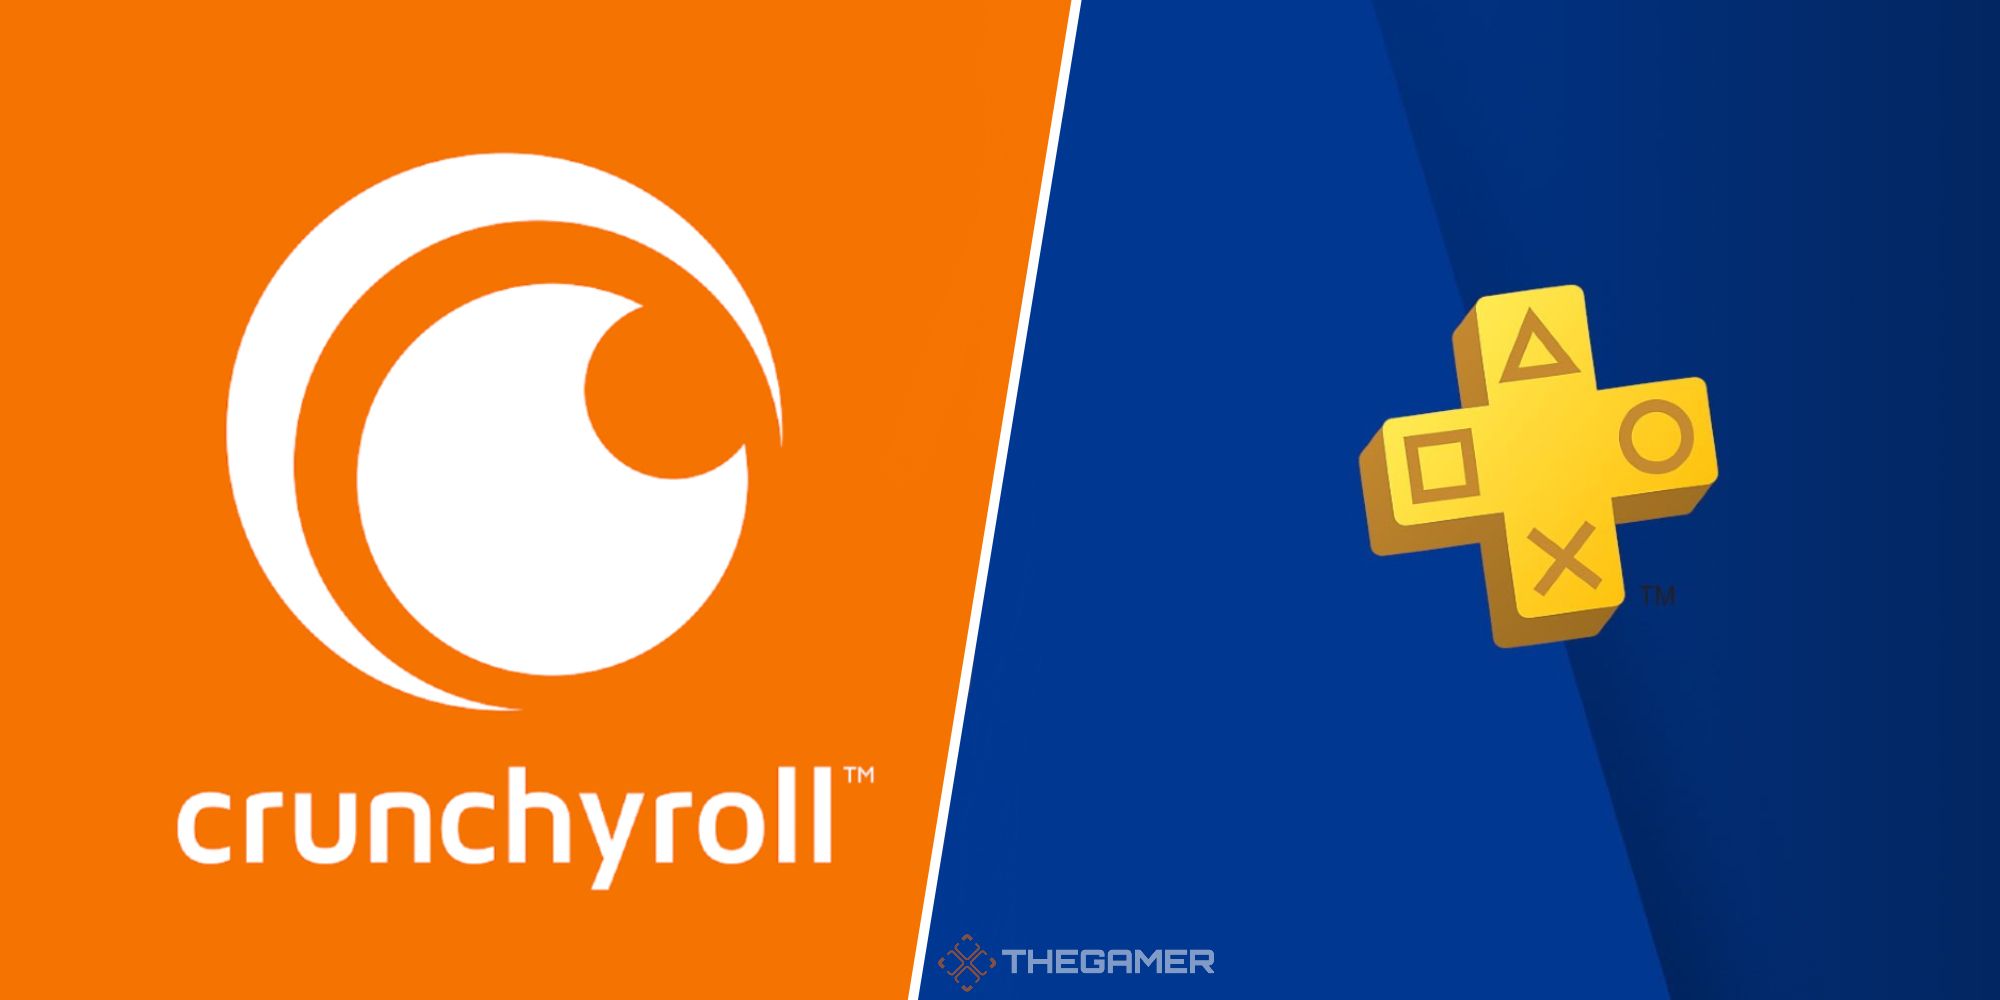 Crunchyroll logo next to a PlayStation Plus logo